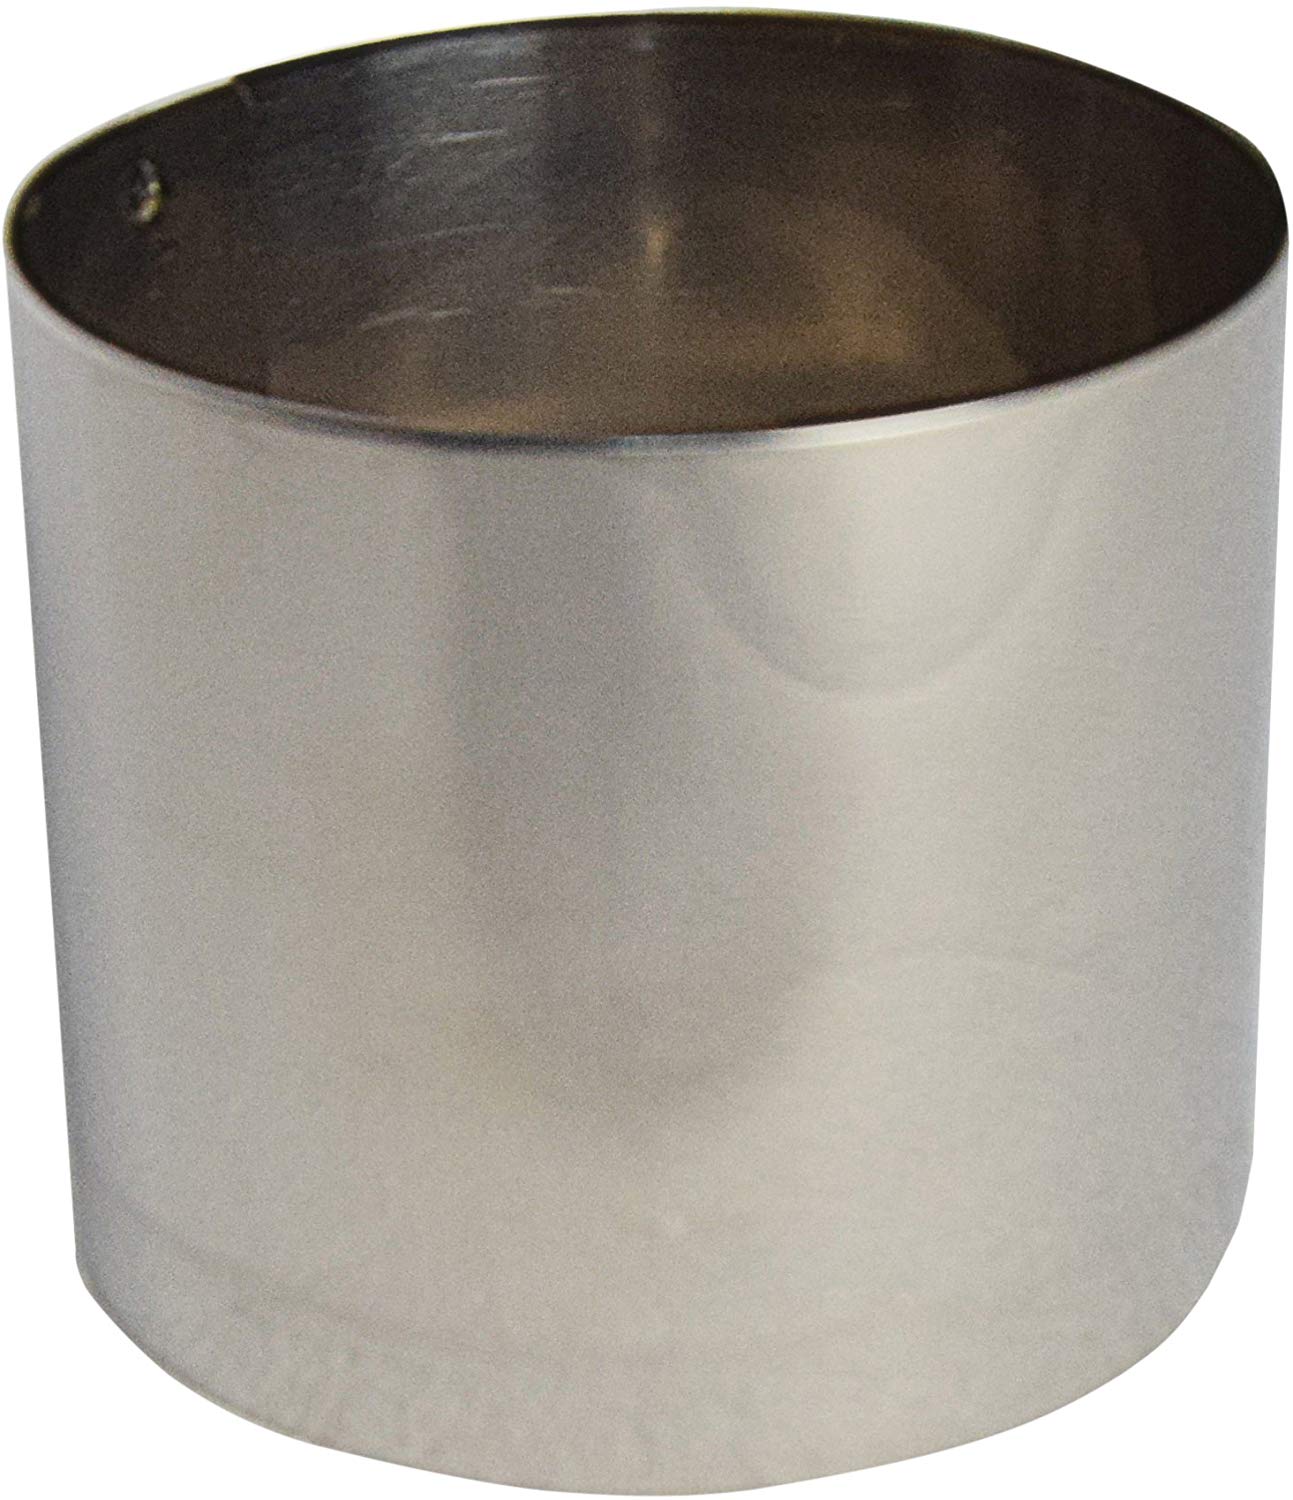 Coppapasta cilindrico h 5 cm. diametro 5,8 cm.